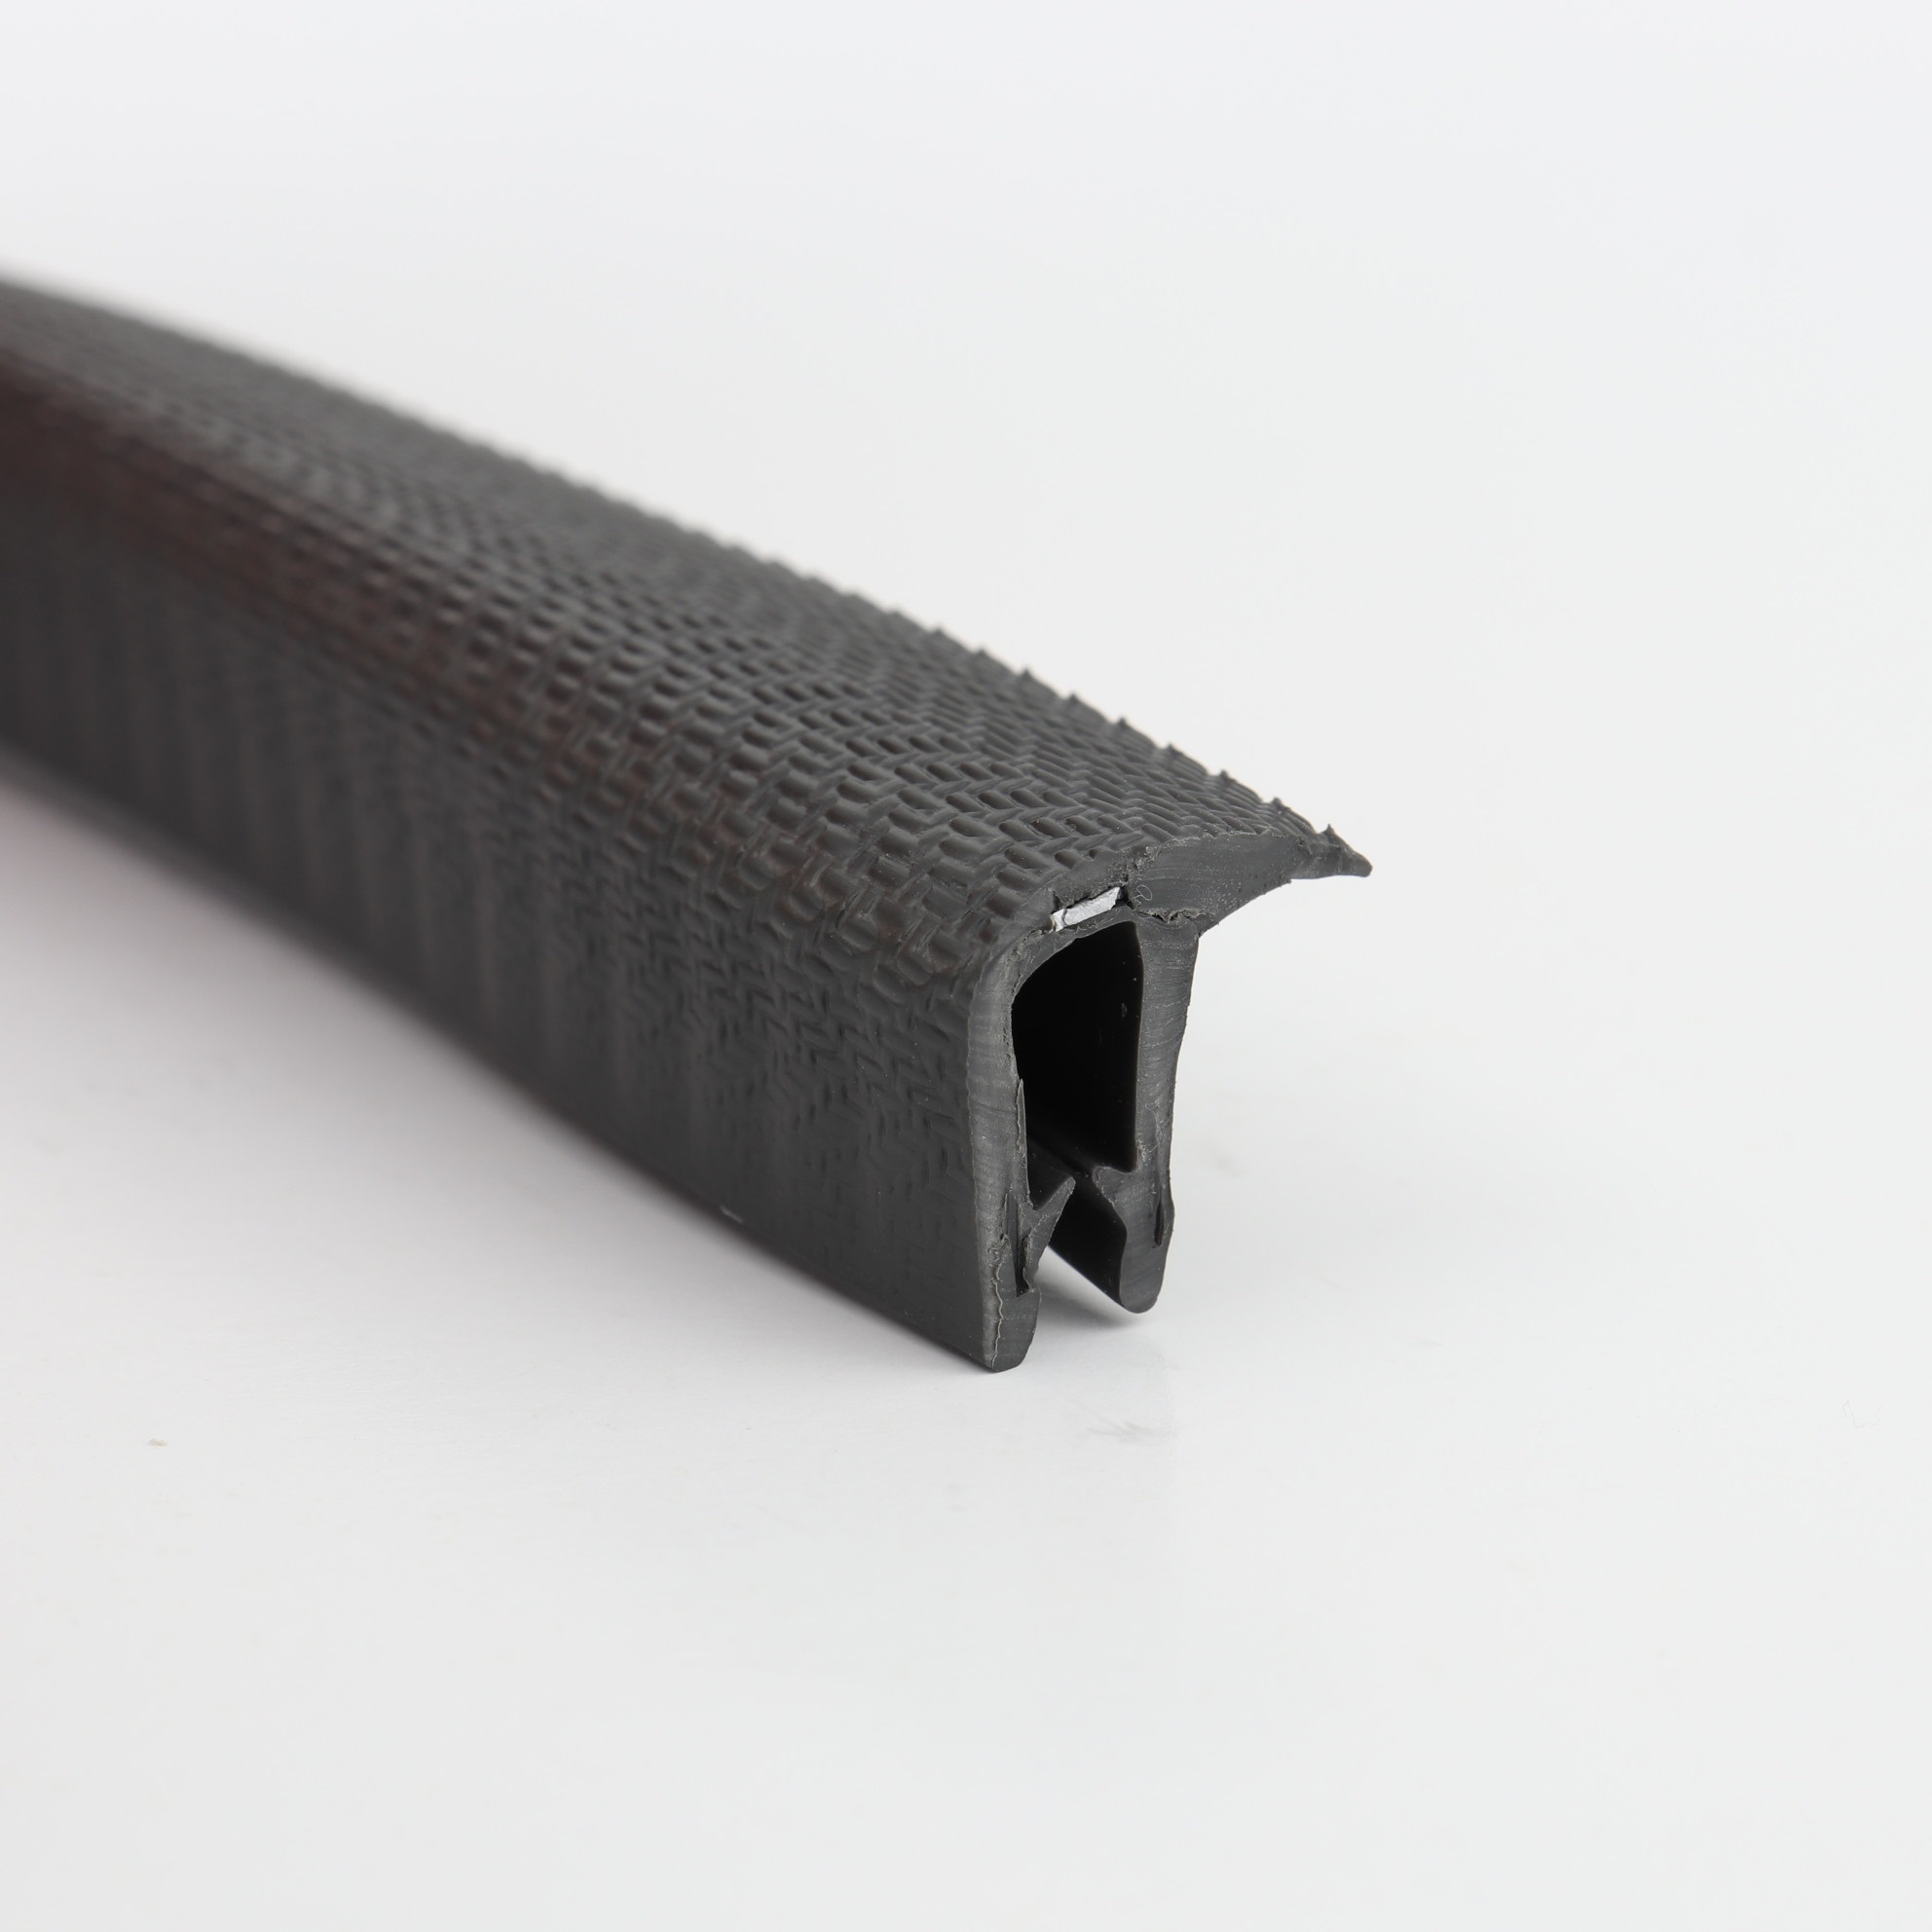 Kantenschutz-Dichtprofil - PVC/EPDM - mit Dichtlippe seitlich - Klemmbereich 1-3mm